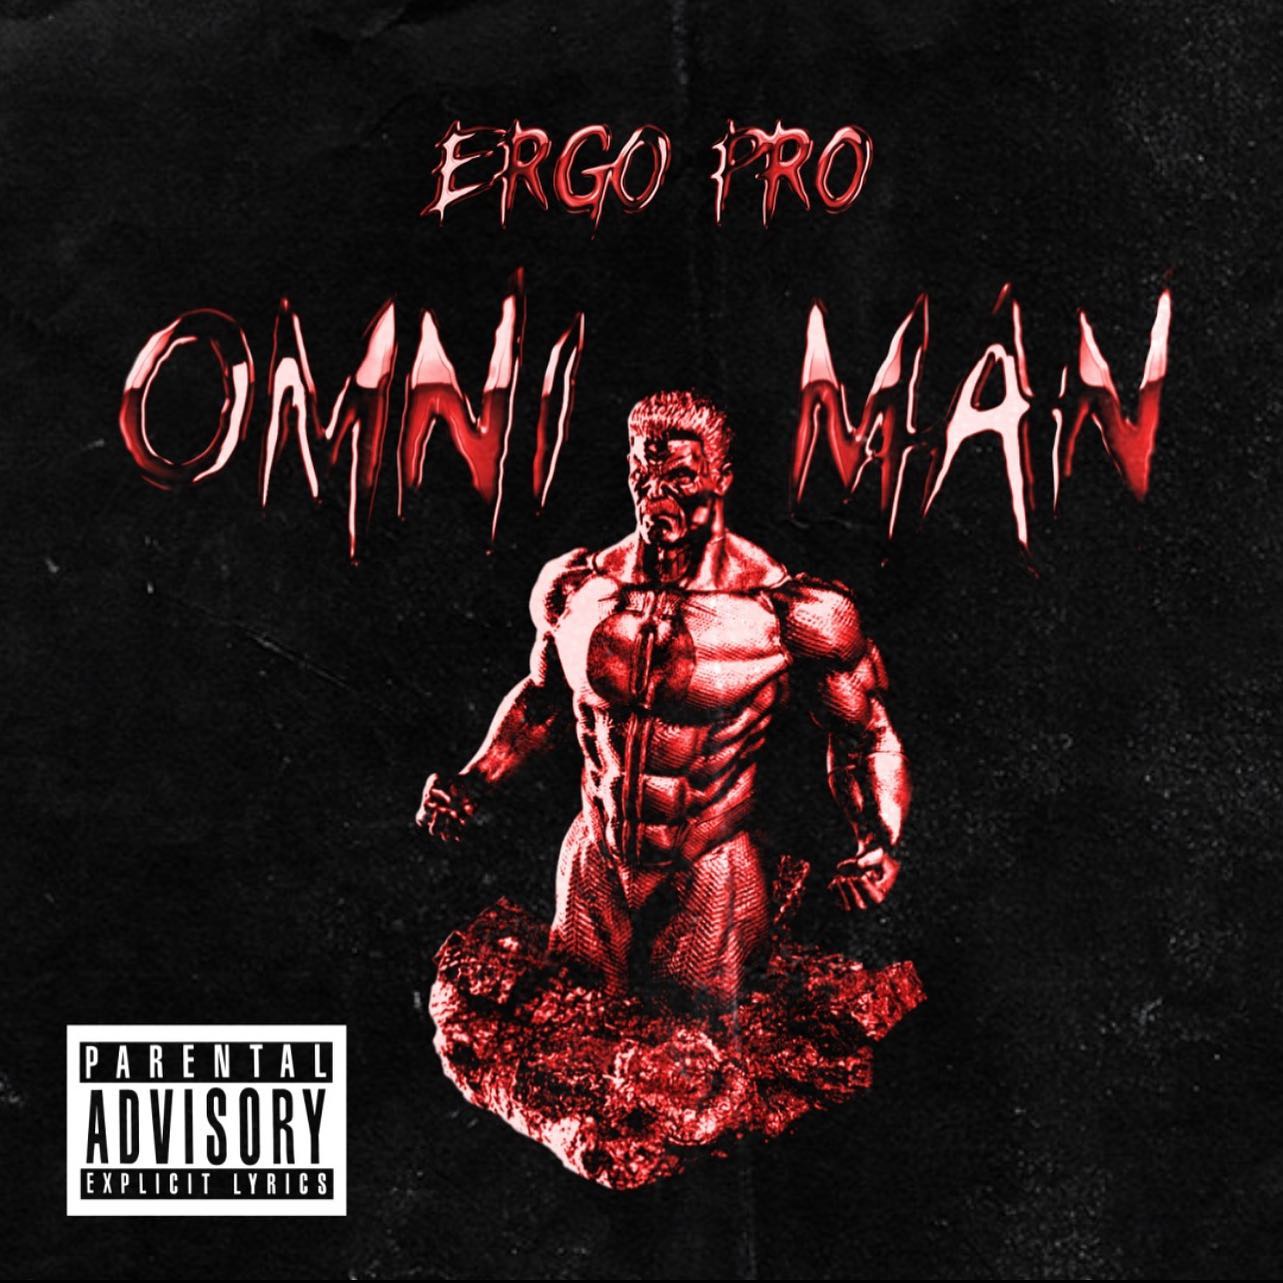 Ergo_pro_omni-man